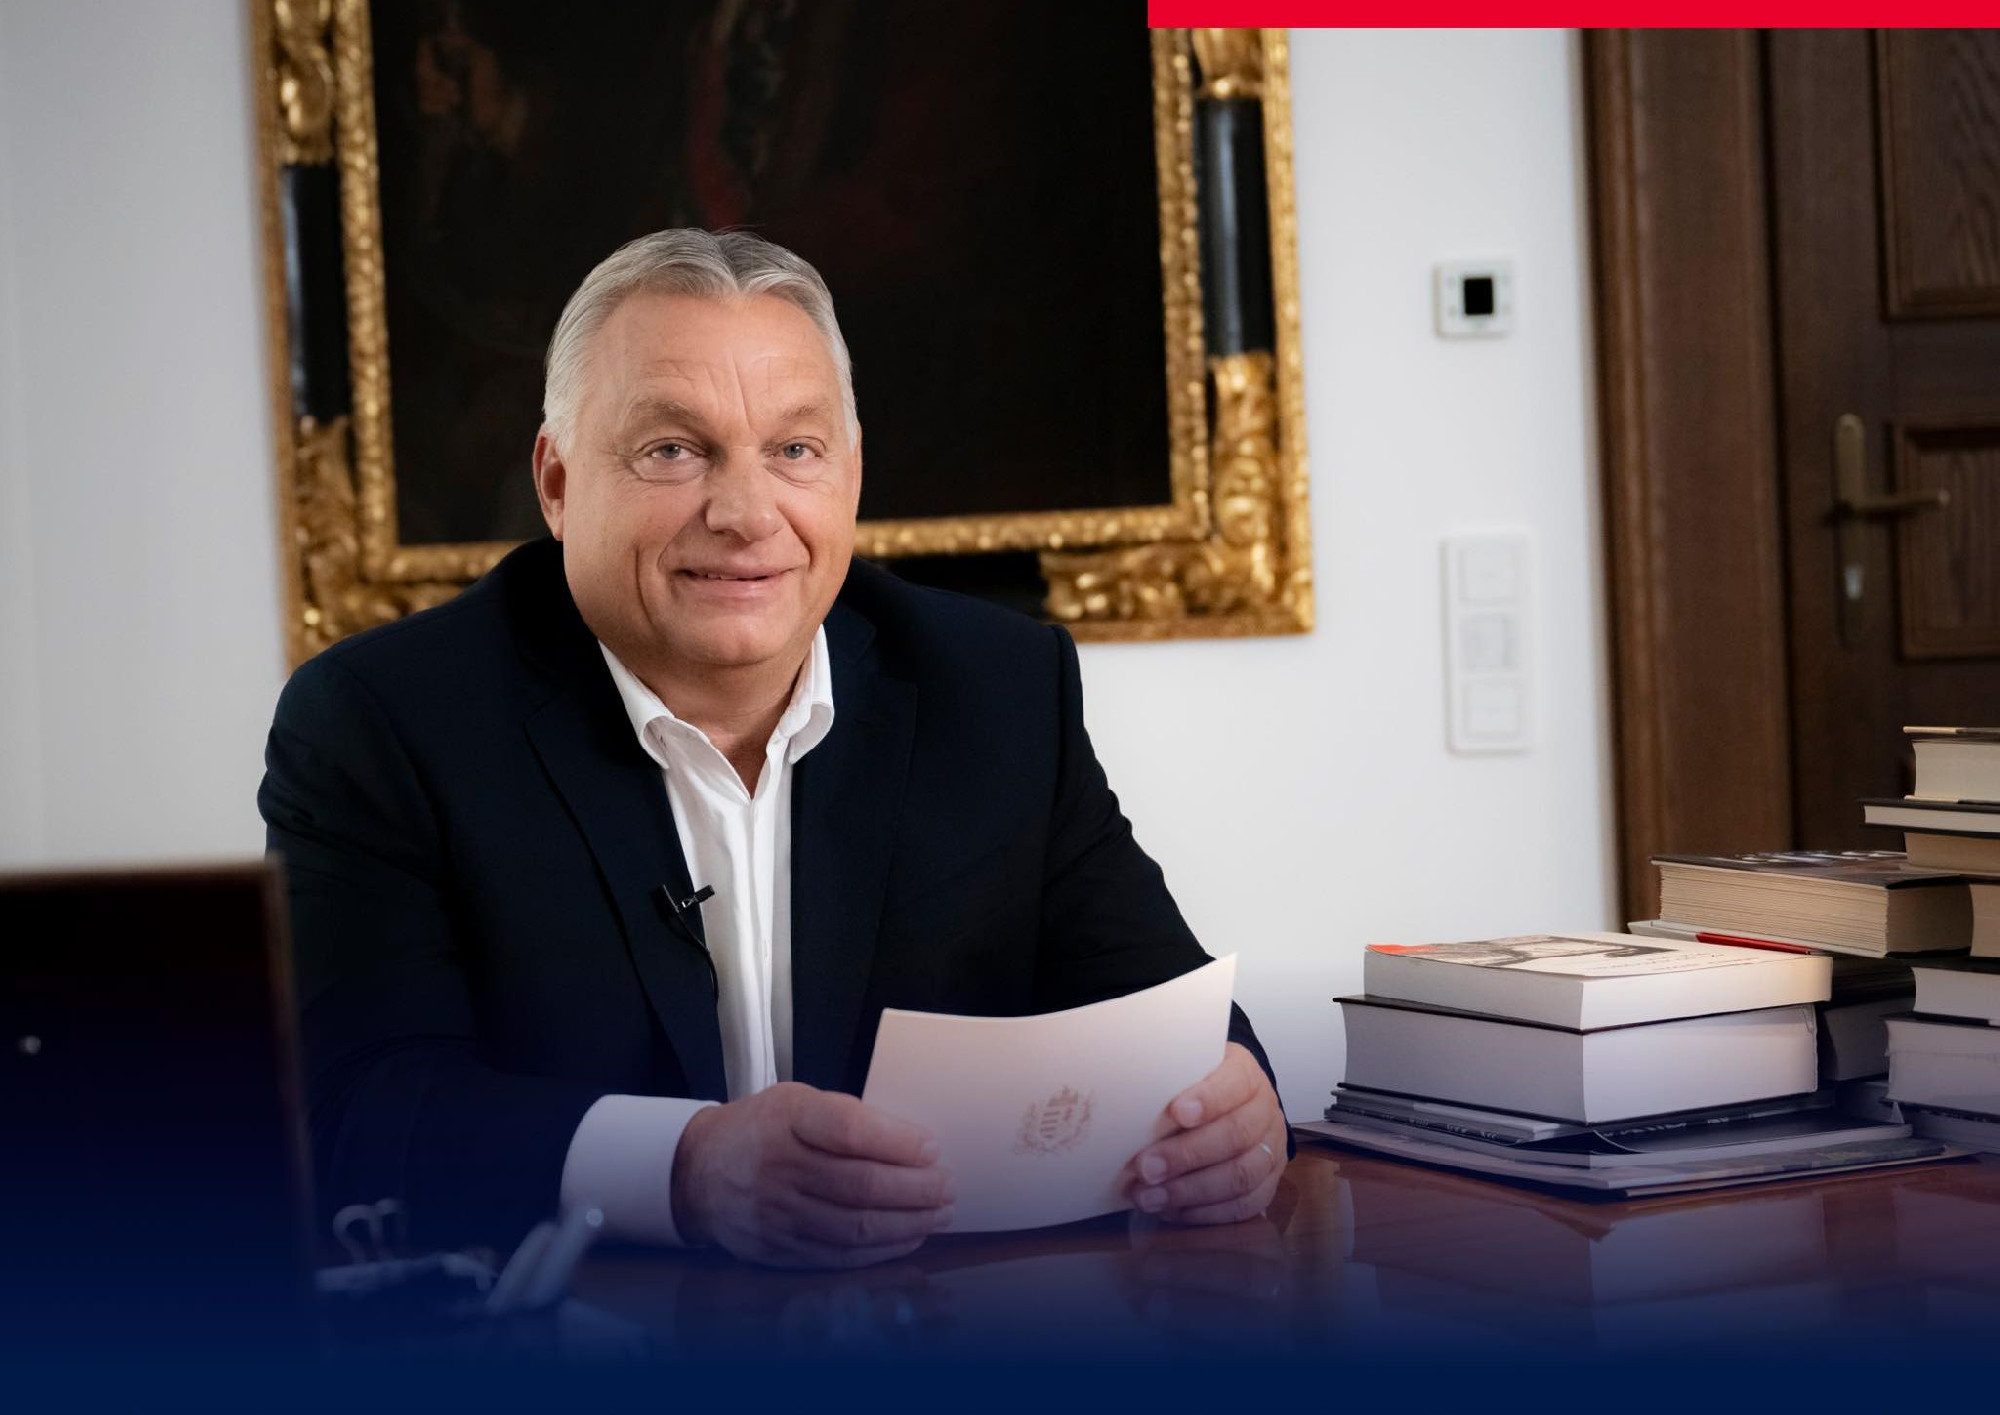 Félhavi nyugdíjat mondott be Orbán Viktor